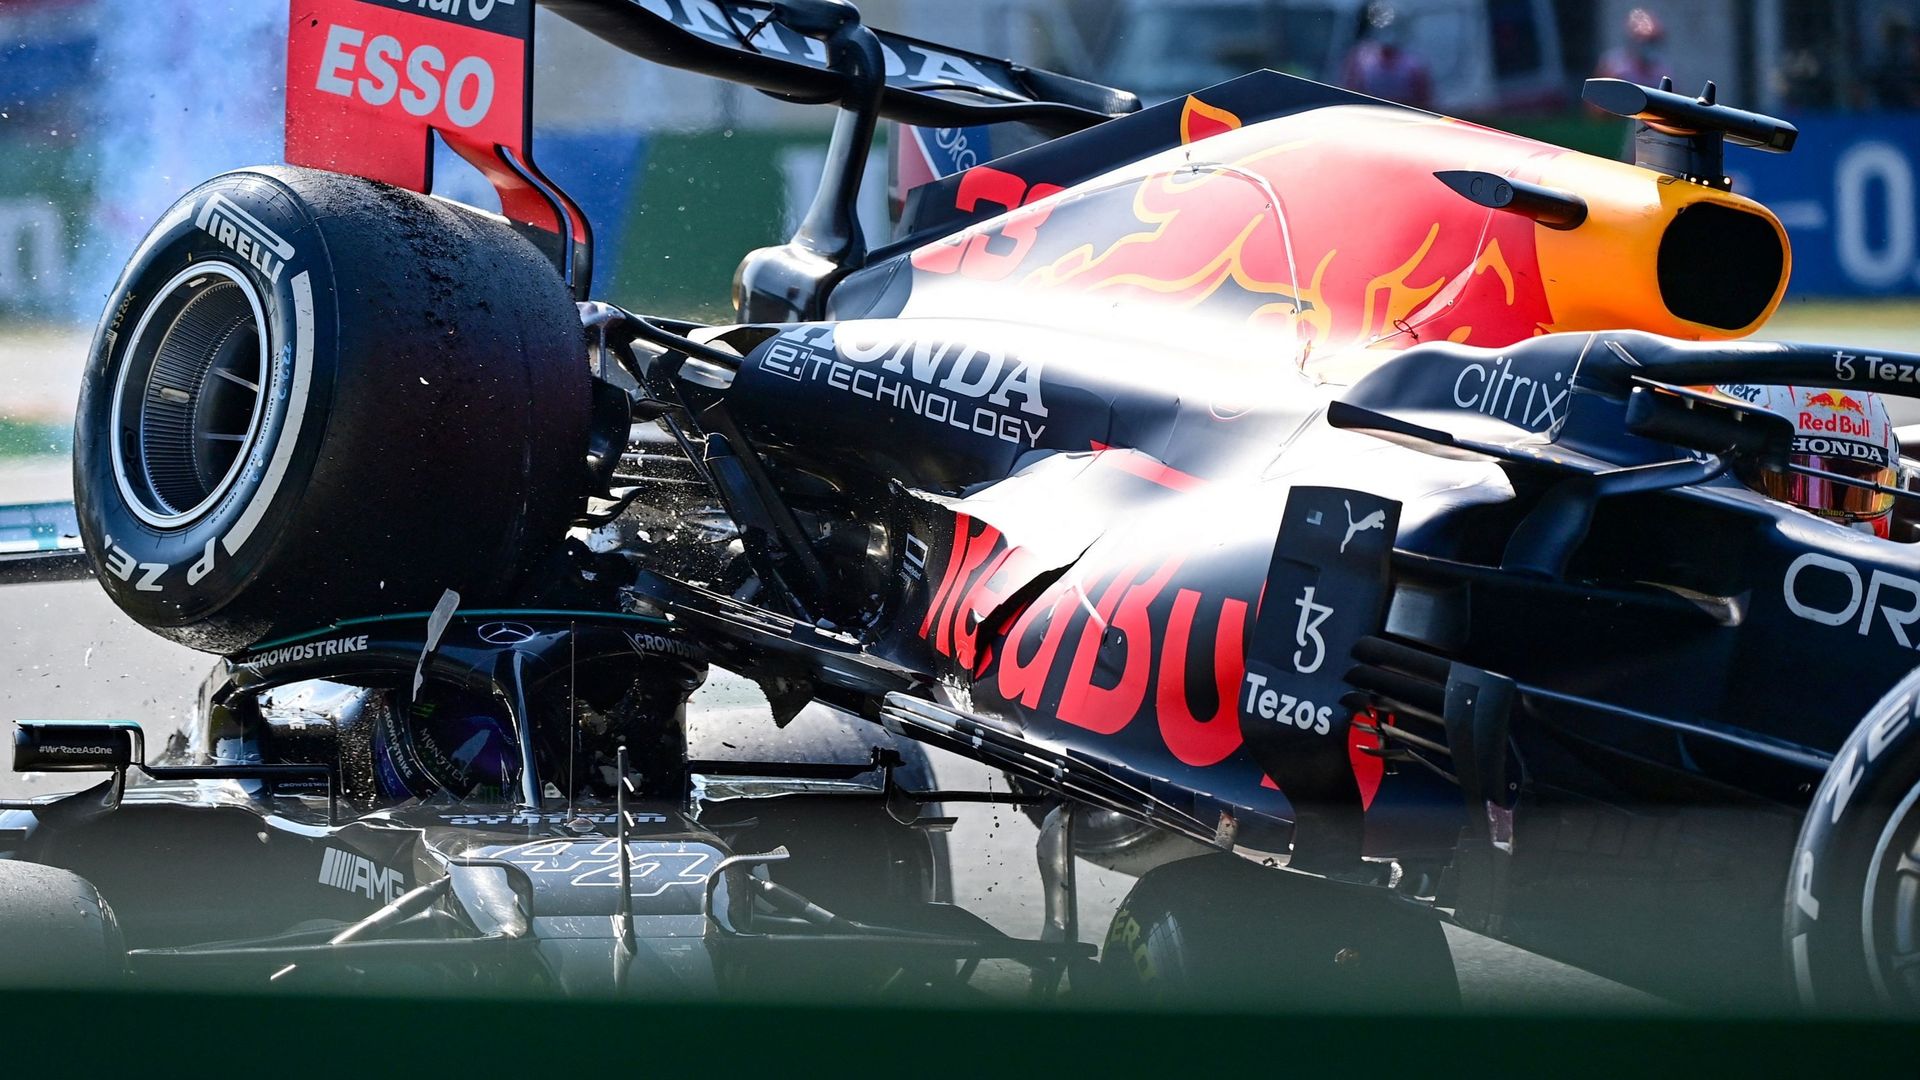 La Red Bull de Max Verstappen passe au-dessus de la Mercedes de Lewis Hamilton lors du Grand Prix d'Italie à Monza